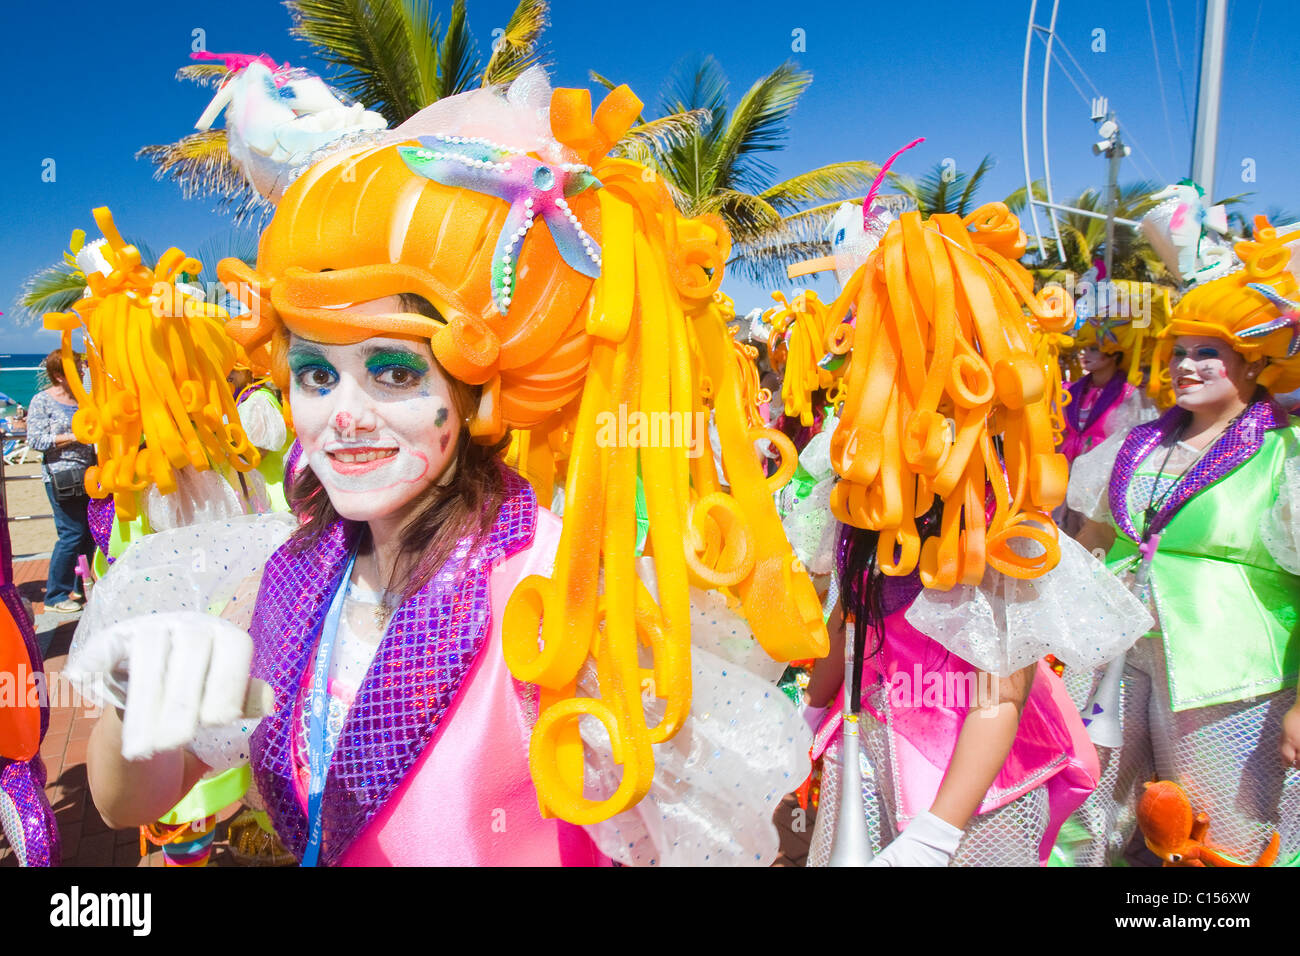 Desconfianza detección Ajustamiento Carnival las palmas hi-res stock photography and images - Alamy